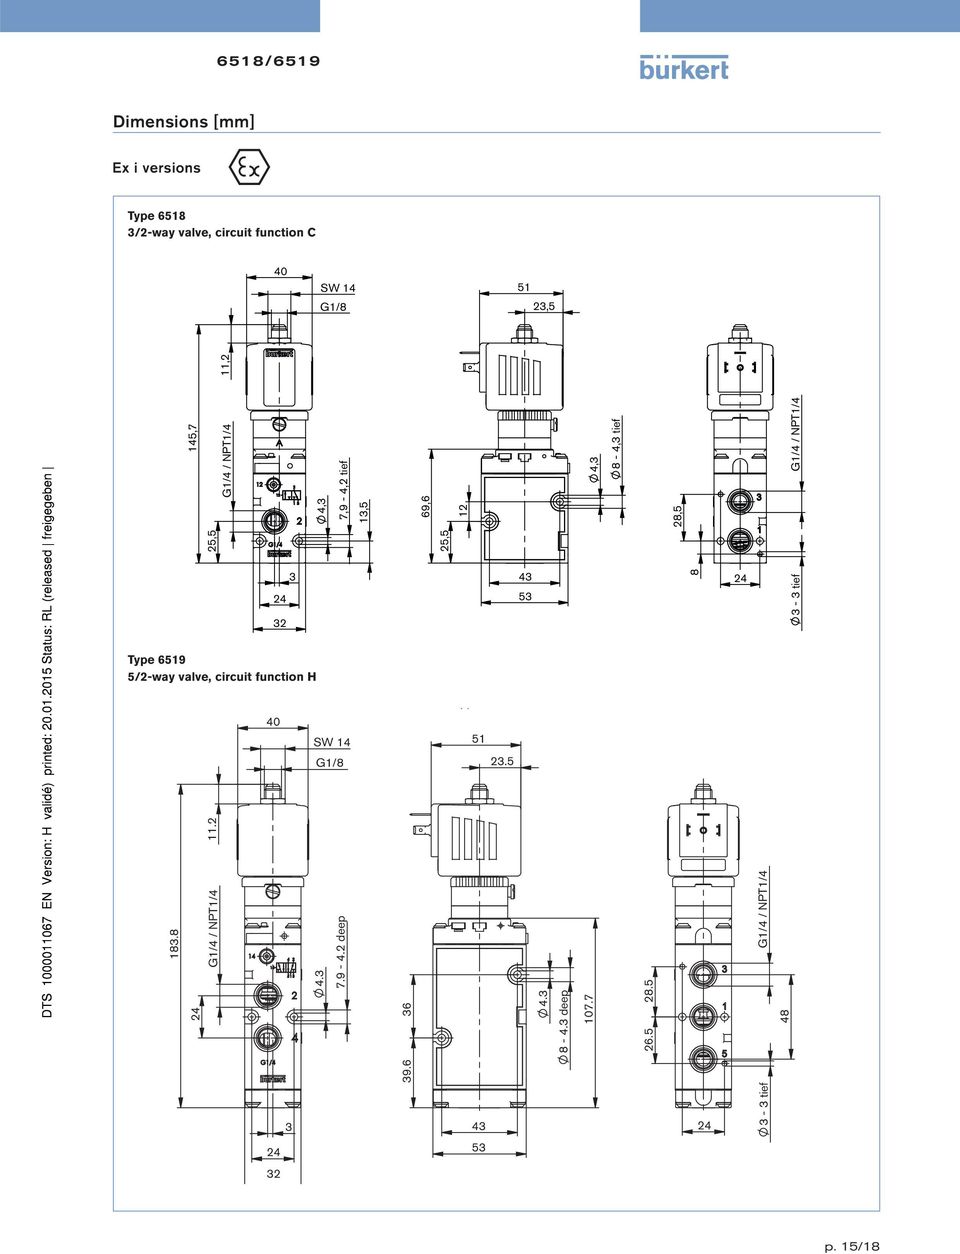 tief 28,5 8 3-3 tief 5/2-way valve, circuit function H 40 pp 51 23.5 183.